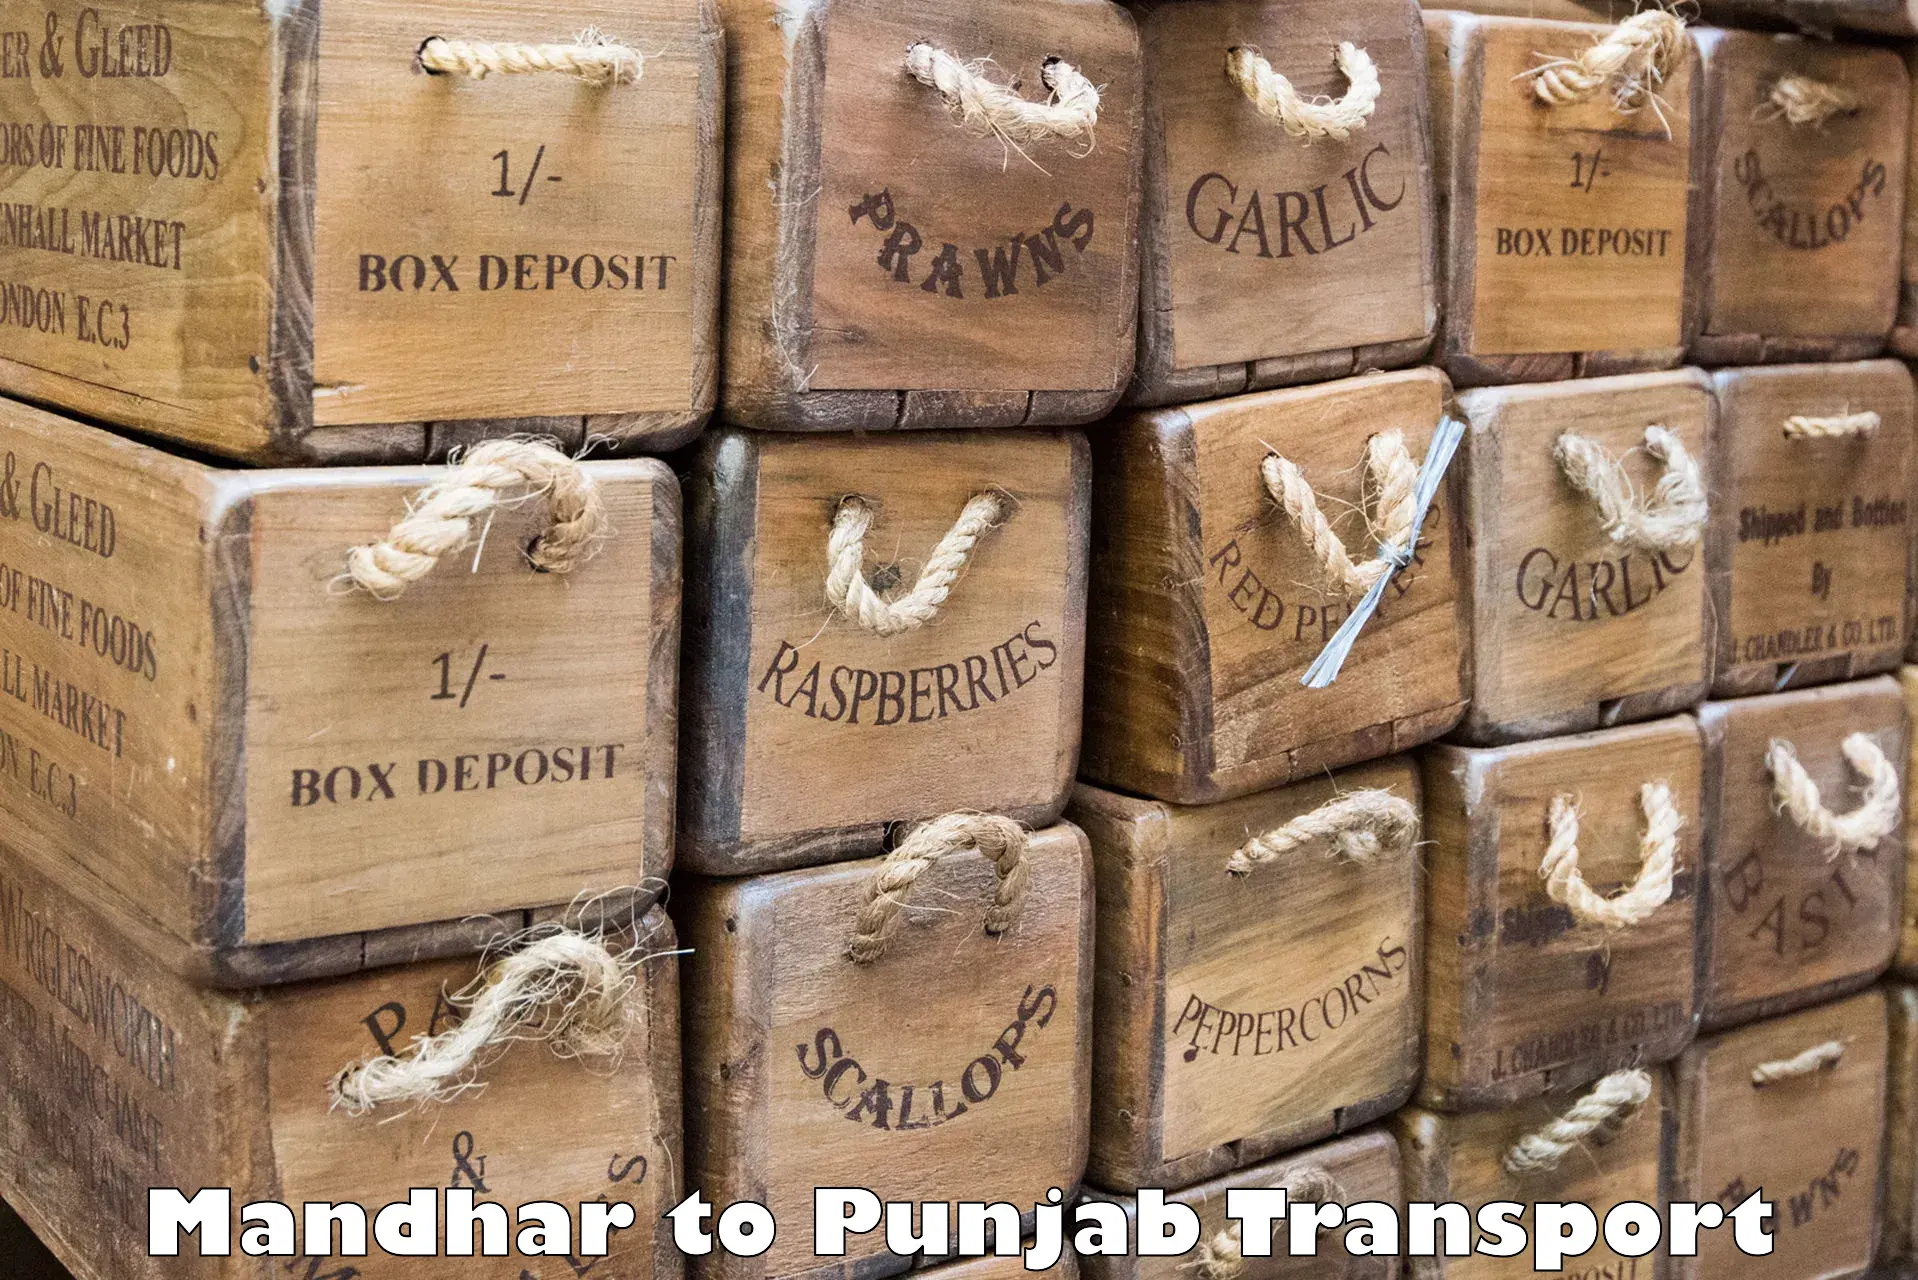 Nearby transport service Mandhar to Punjab